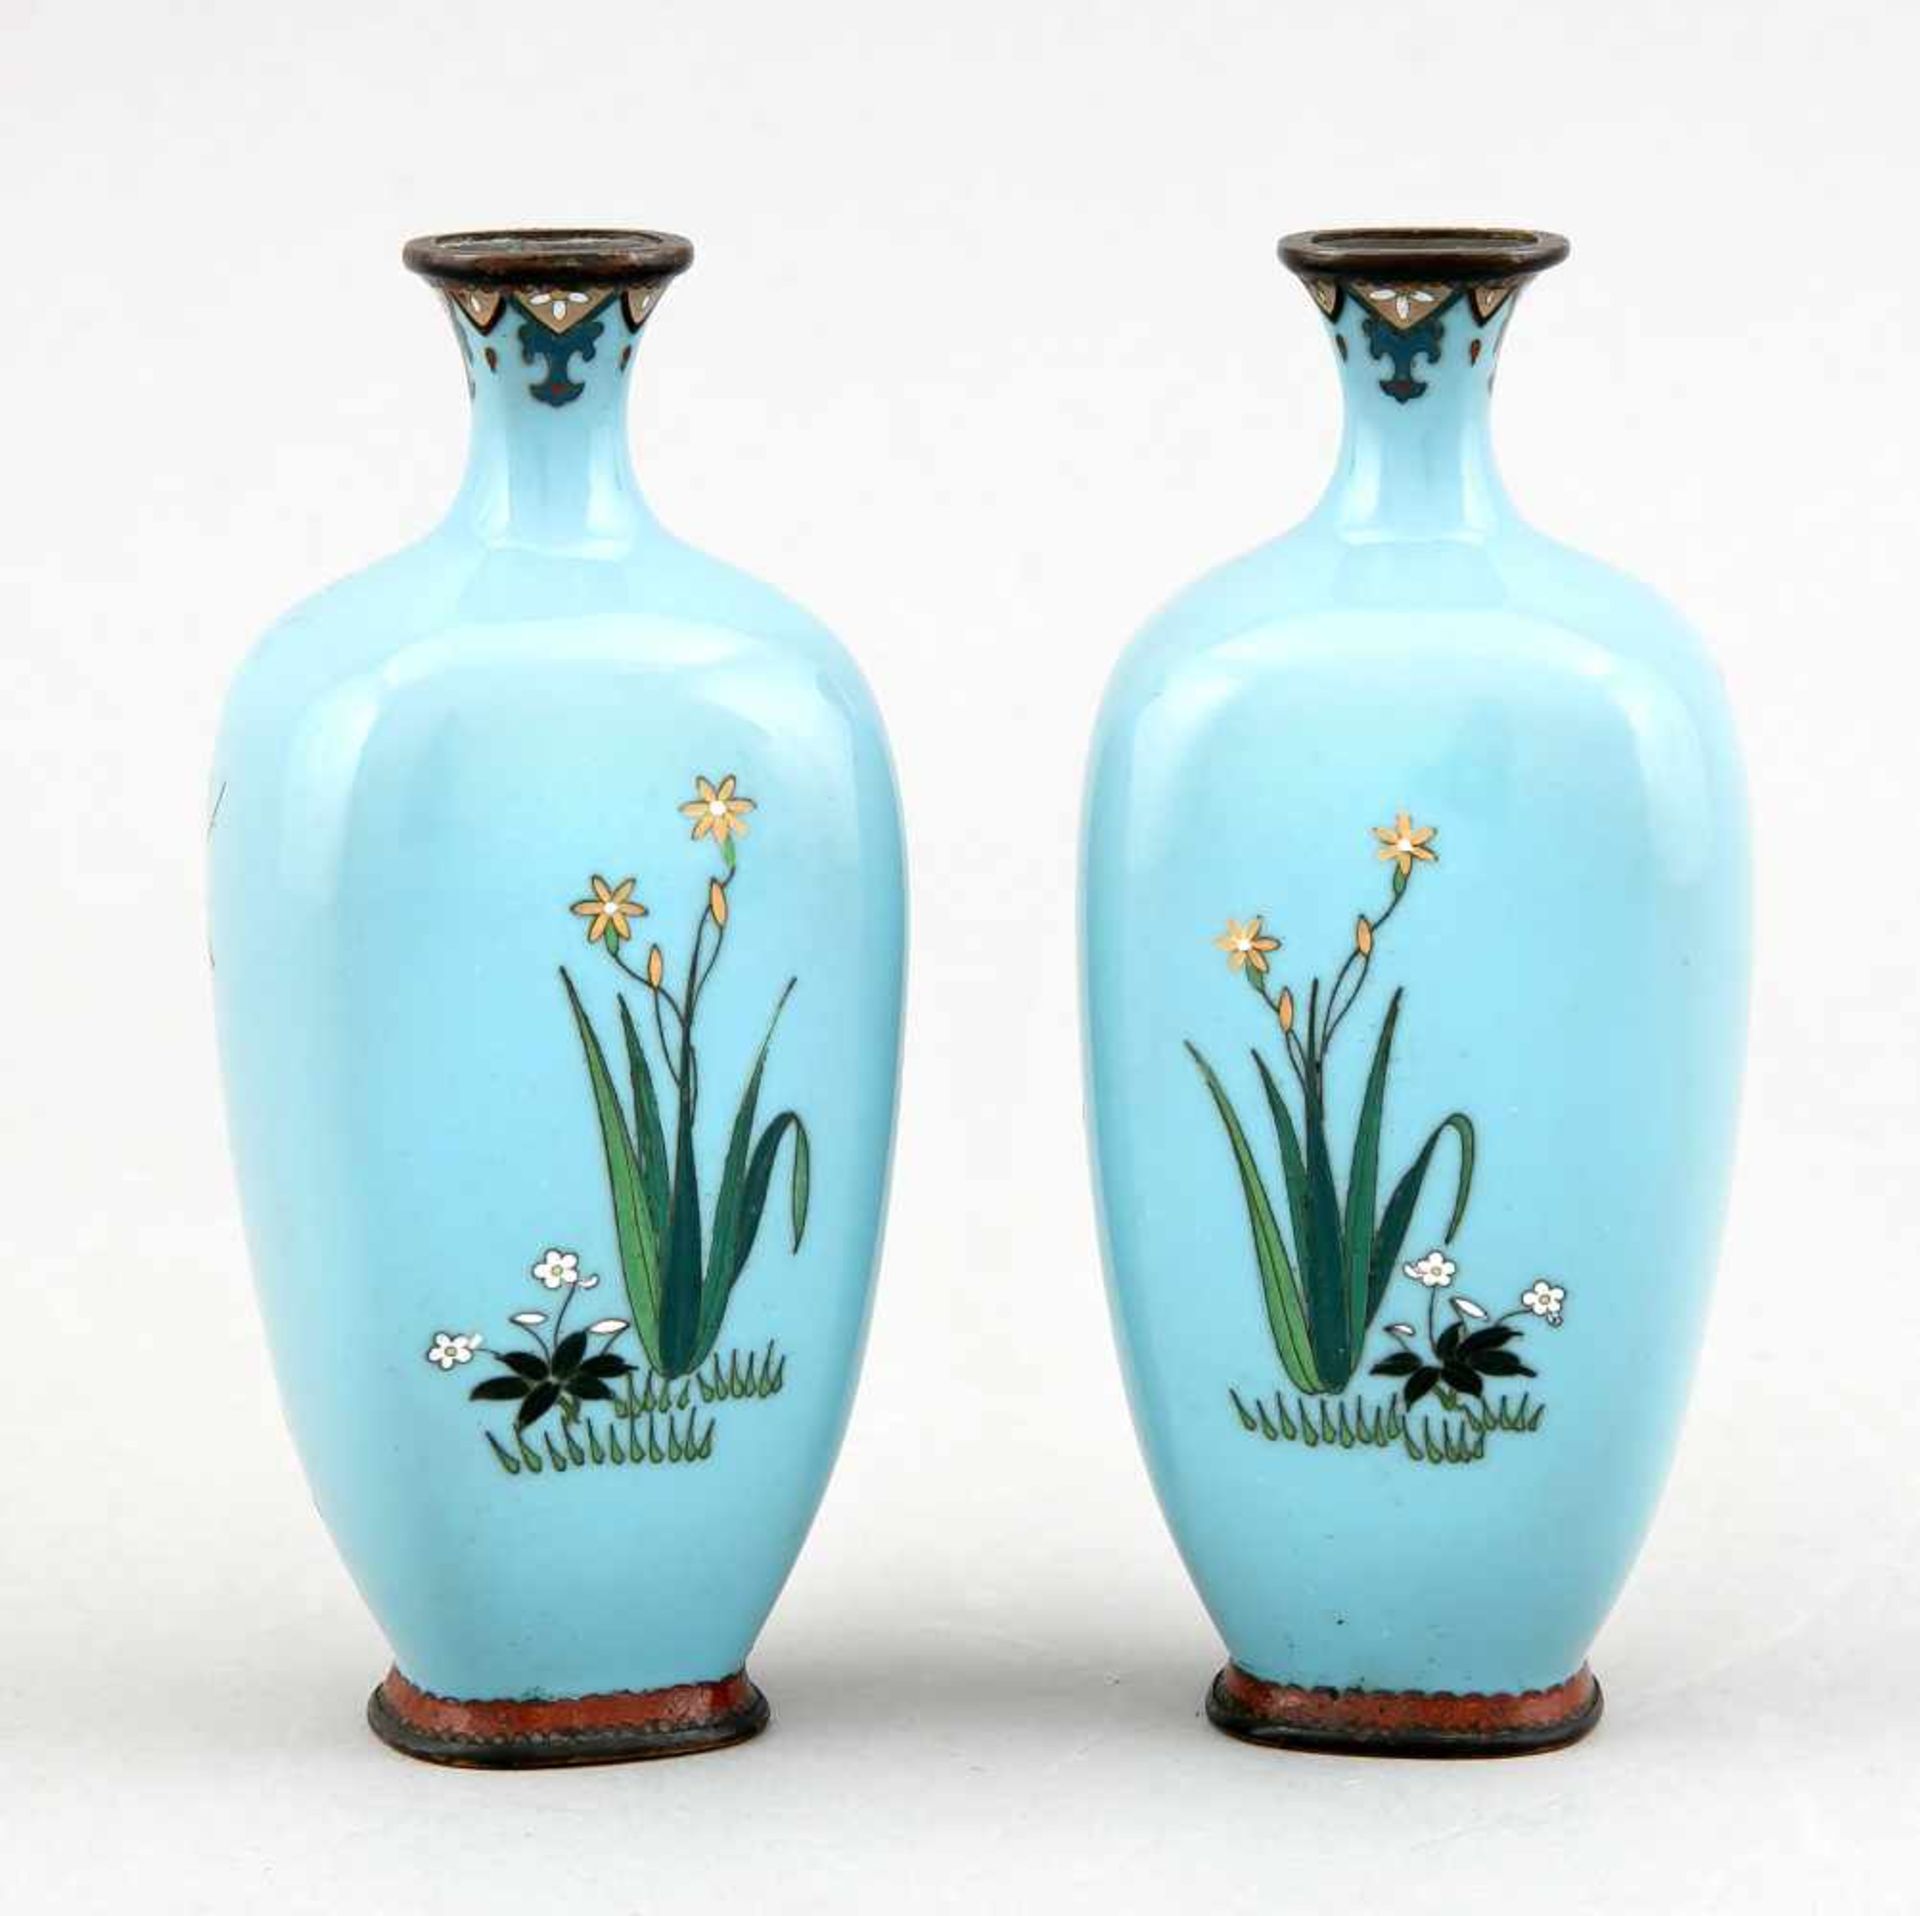 Paar kleine Cloisonné-Vasen, Japan/China, um 1900, Dekor mit kleinem blühenden Baum(Pflaume?), - Bild 2 aus 2